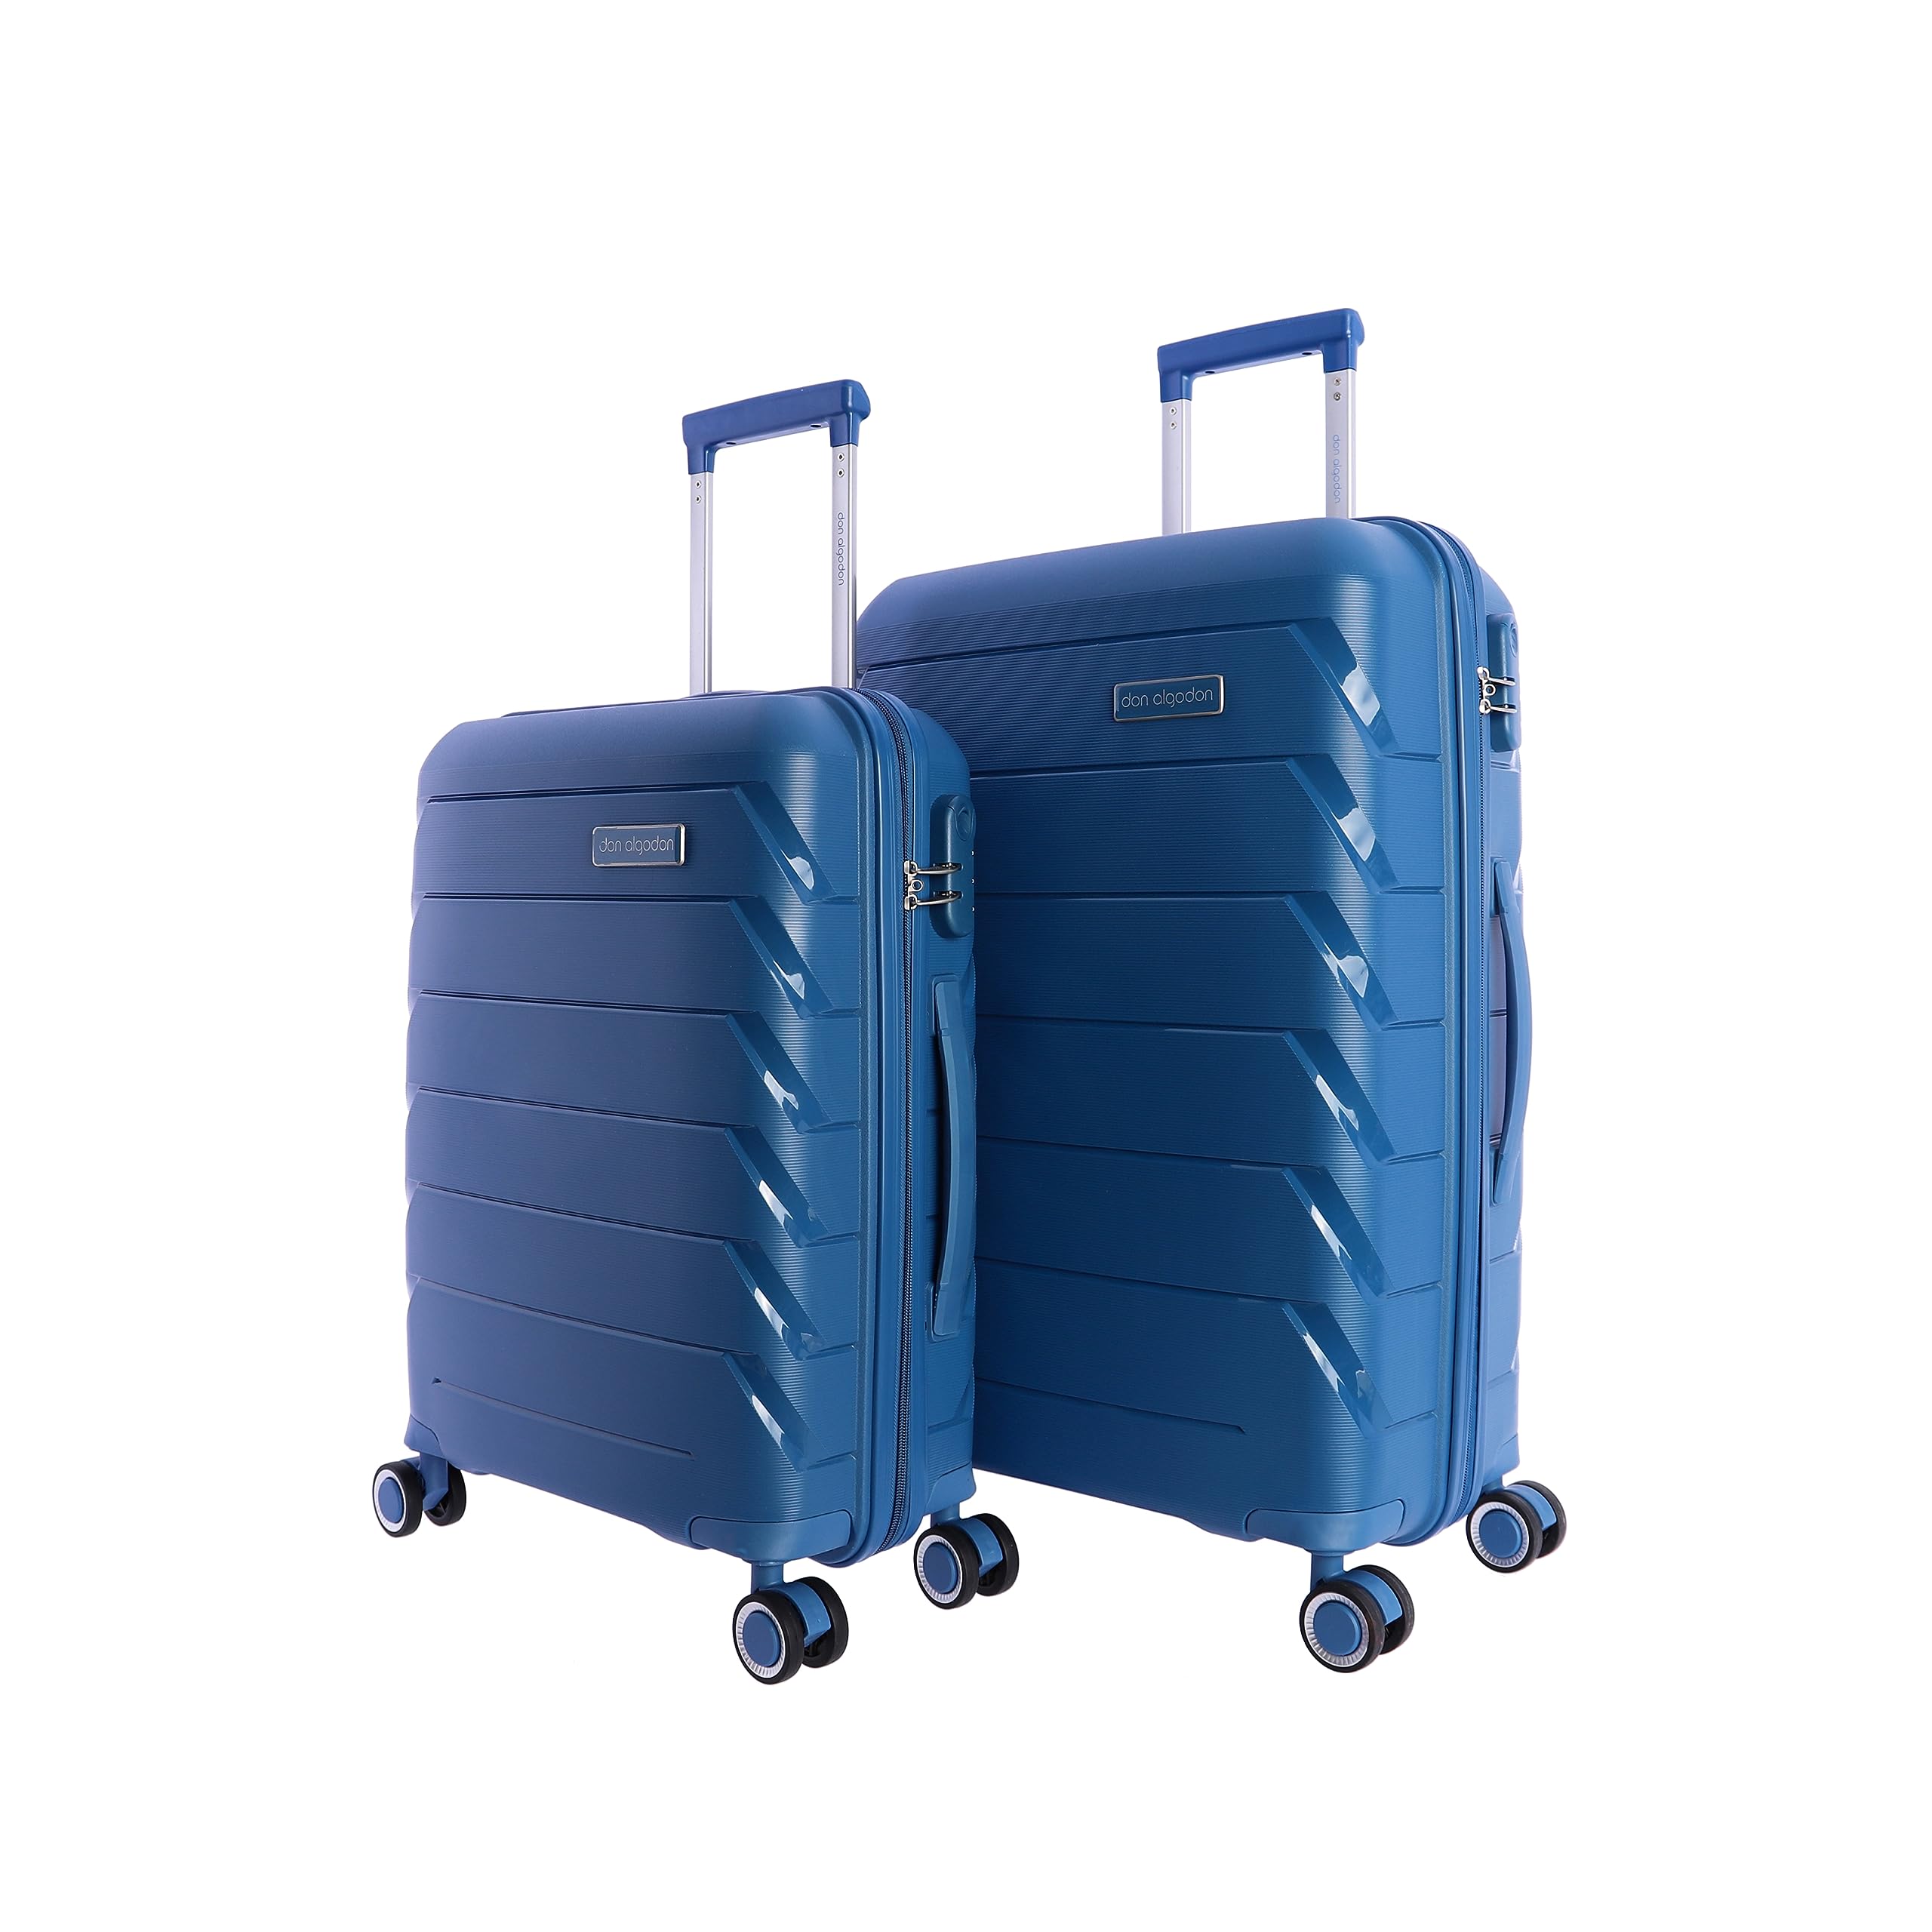 Don Algodon Koffer-Set - Reisekoffer aus Polypropylen - Set Reisekoffer - Kabinenkoffer 55 x 40 x 20 cm und mittlerer Koffer 4 Räder - Mittlere Reisekoffer - Reisekoffer Kabine, blau, 64x44x24 cm,